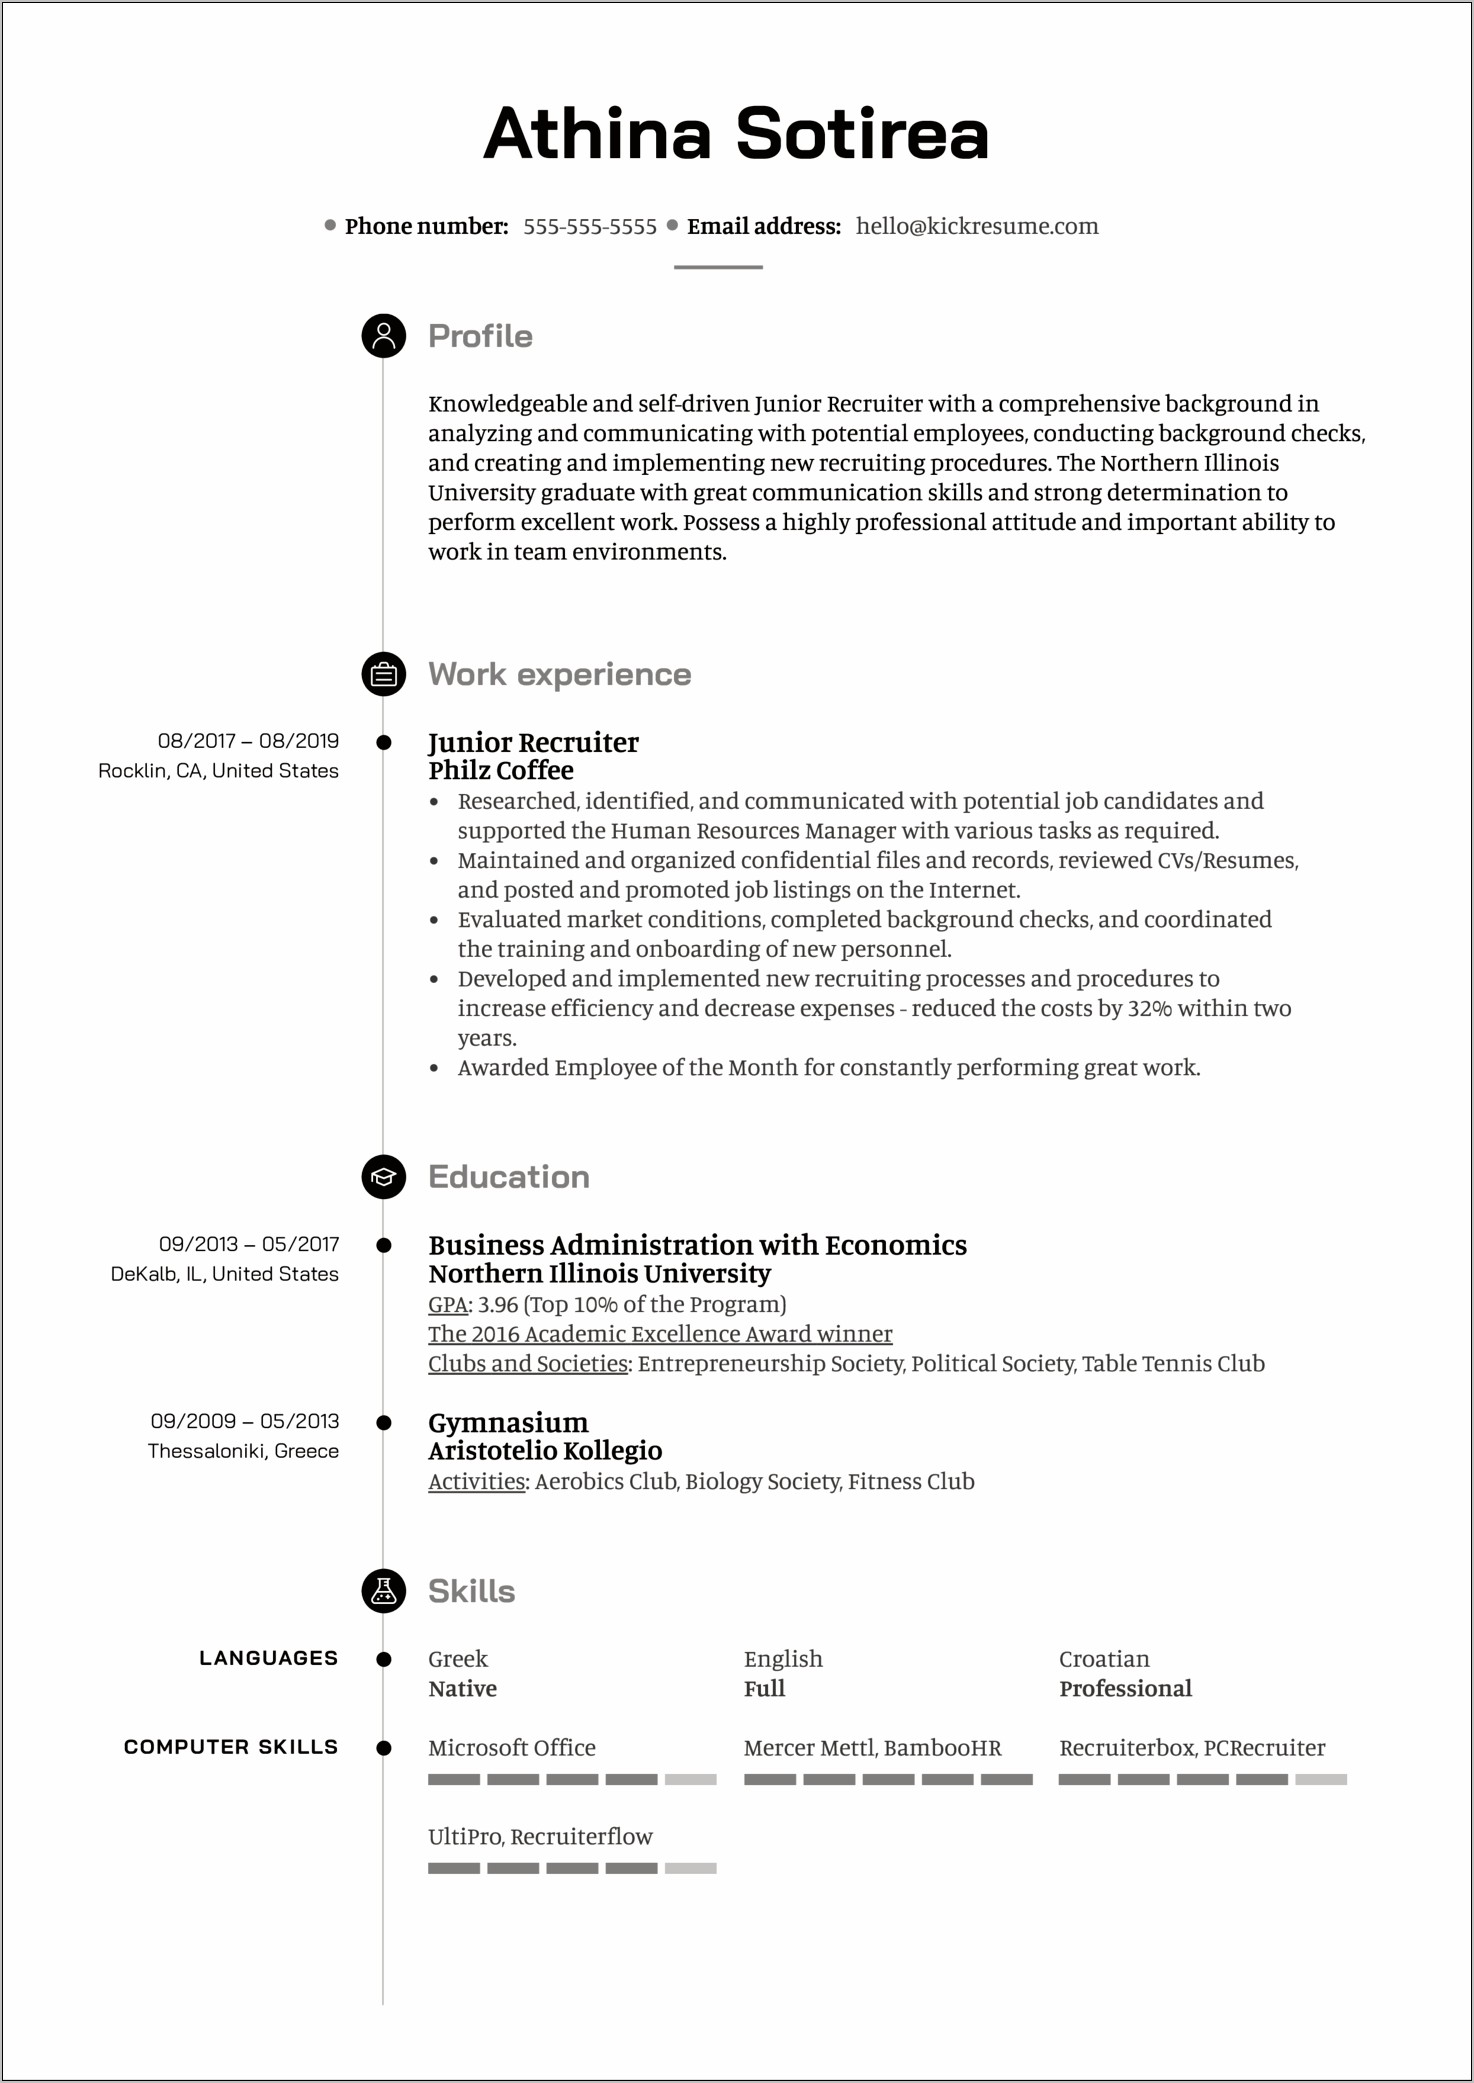 Sample Resume For Hr Recruiter Position